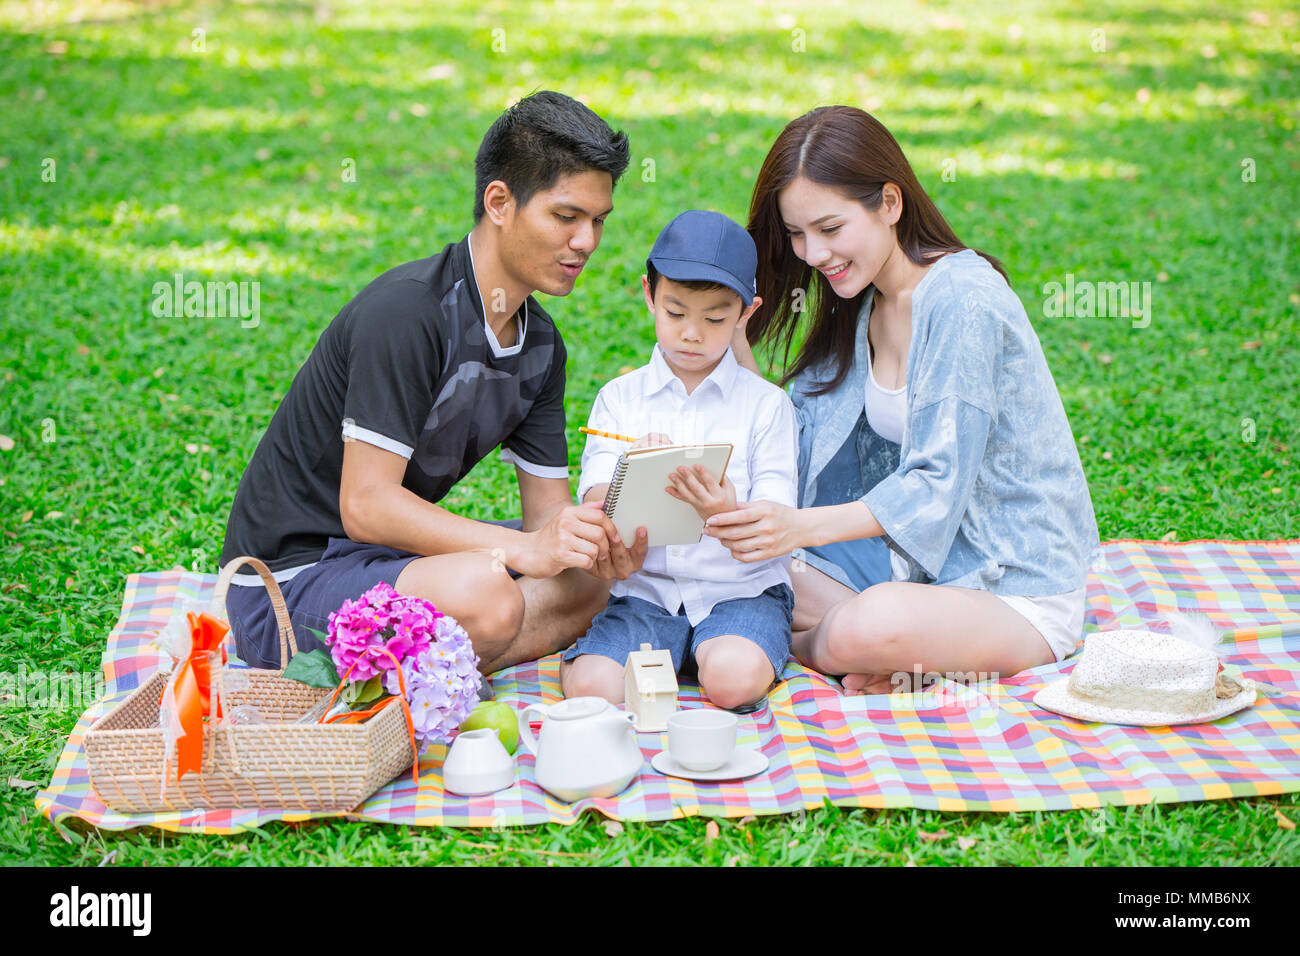 Eltern wie Lehrer Konzept: Jugendlich Familie mit einem Kind glücklich Bildung Moment in den Park. Stockfoto